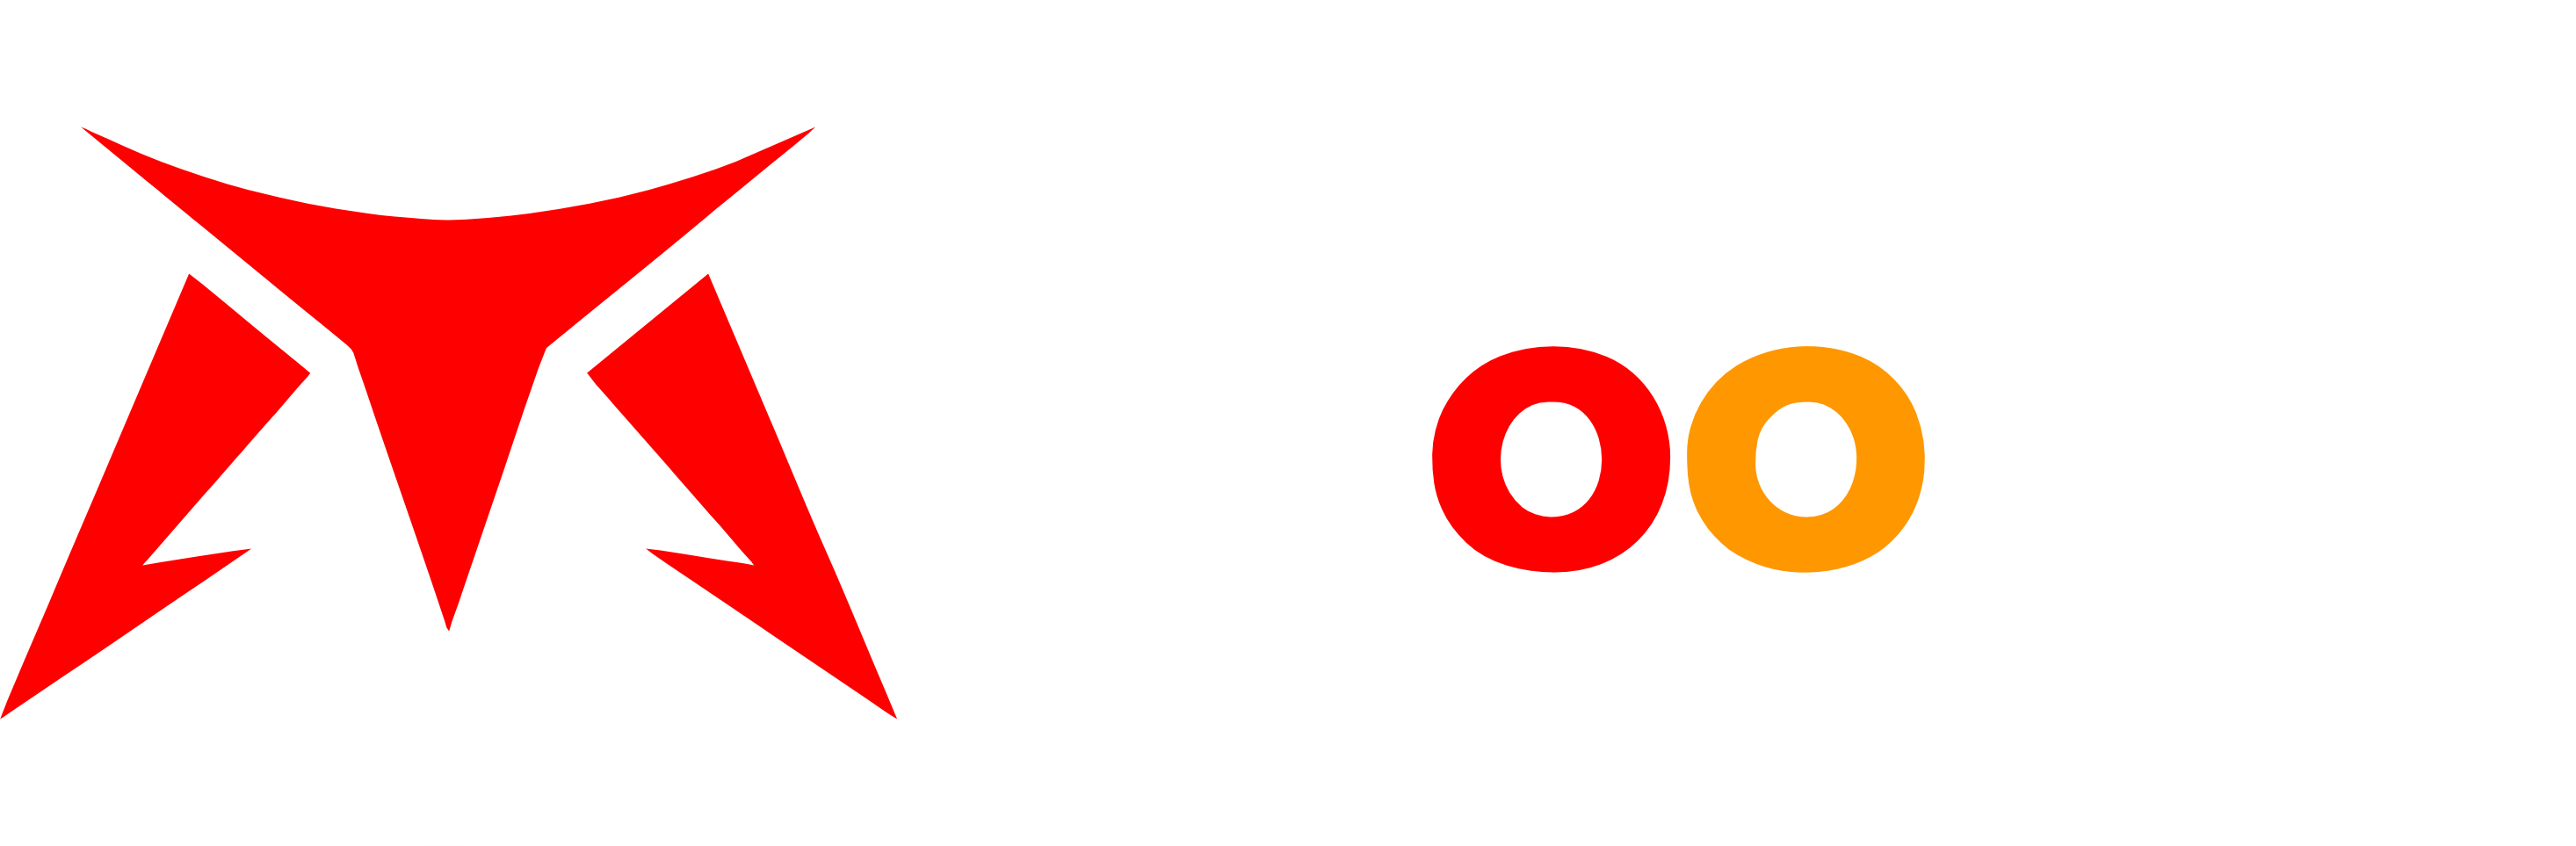 Top Up Game di Moogie.id Dengan Banyak Pilihan Pembayaran